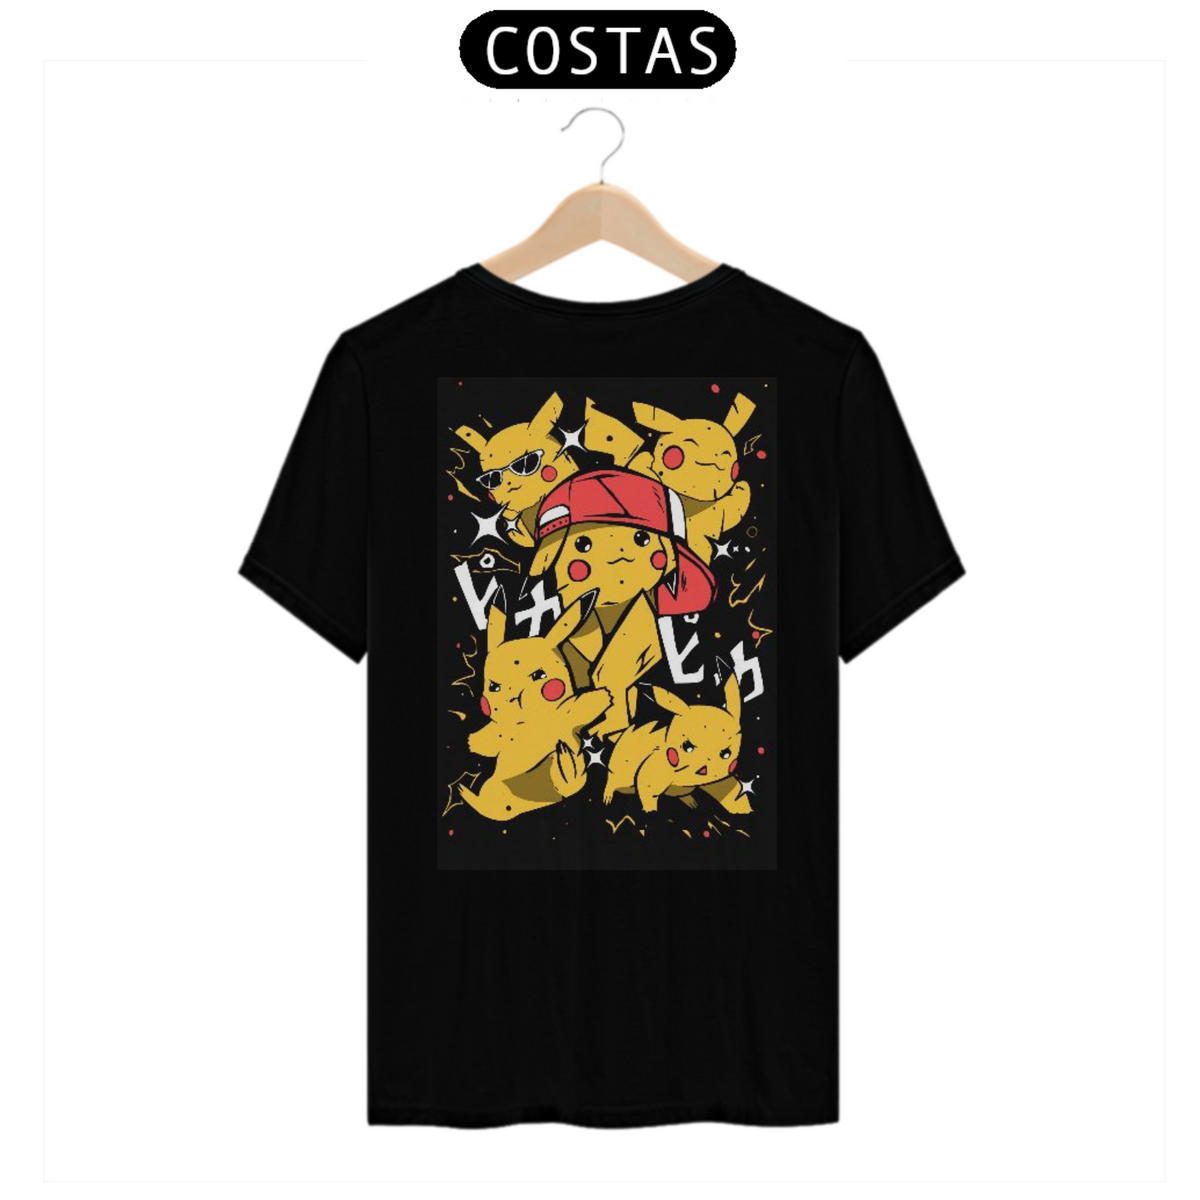 Nome do produto: T-shirt Pikachu 